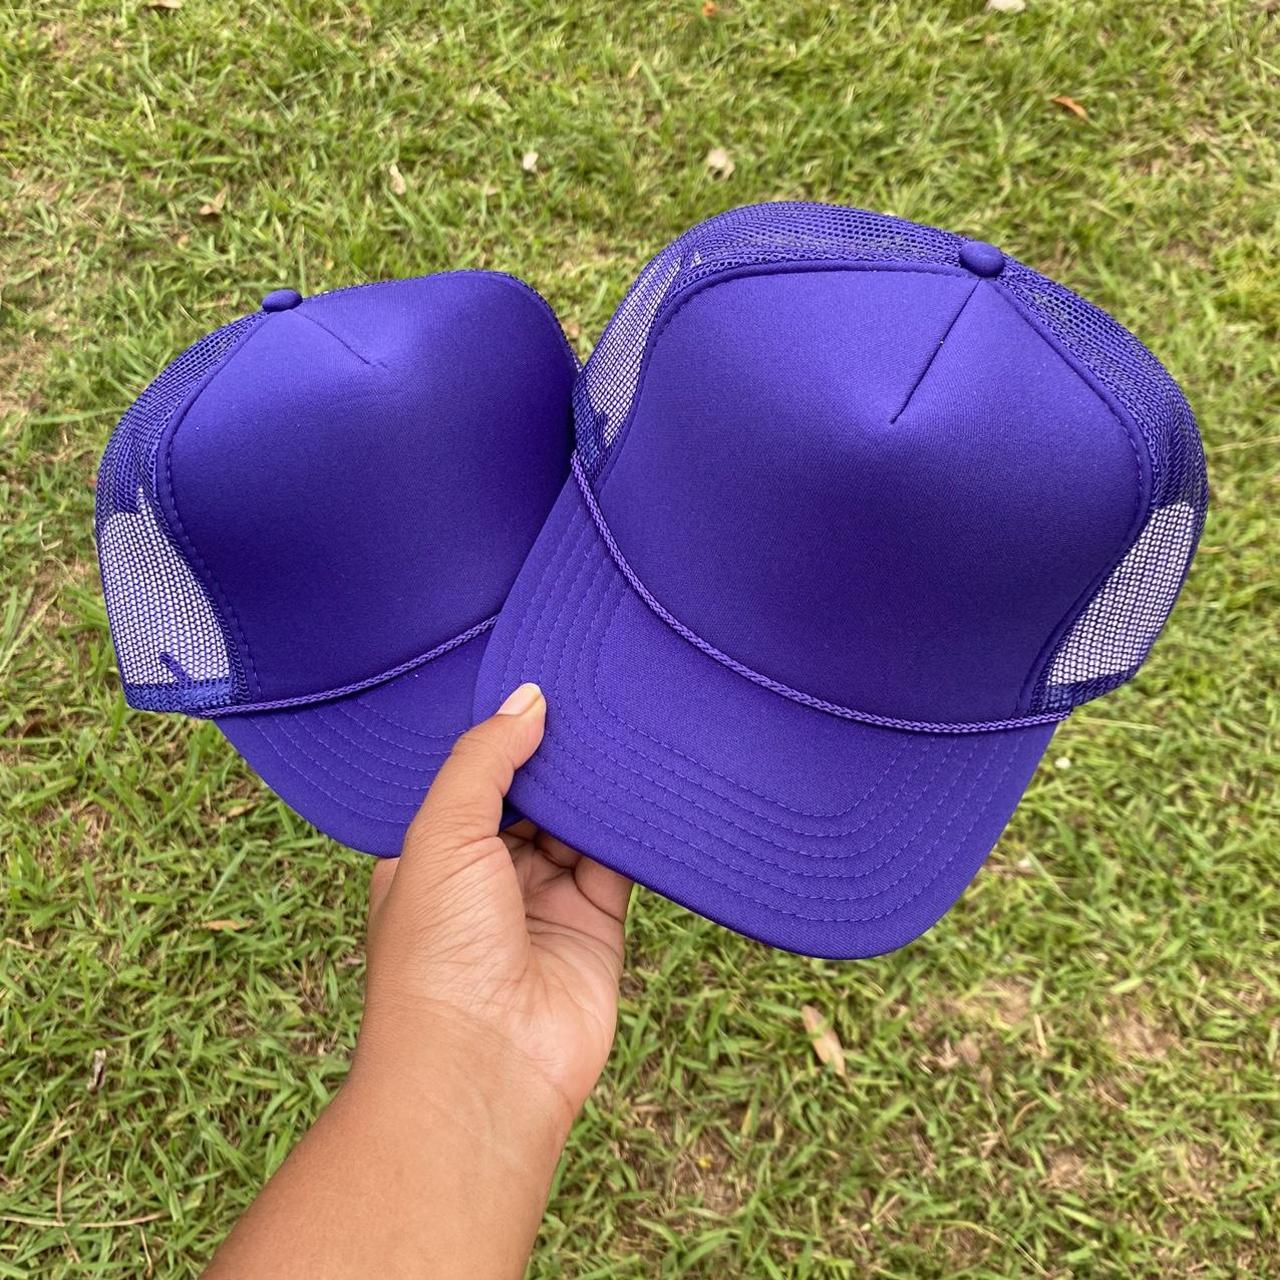 2 Purple Blank Trucker Hats 🟣 ⭐️ BRAND NEW ⭐️ 🧢 One - Depop